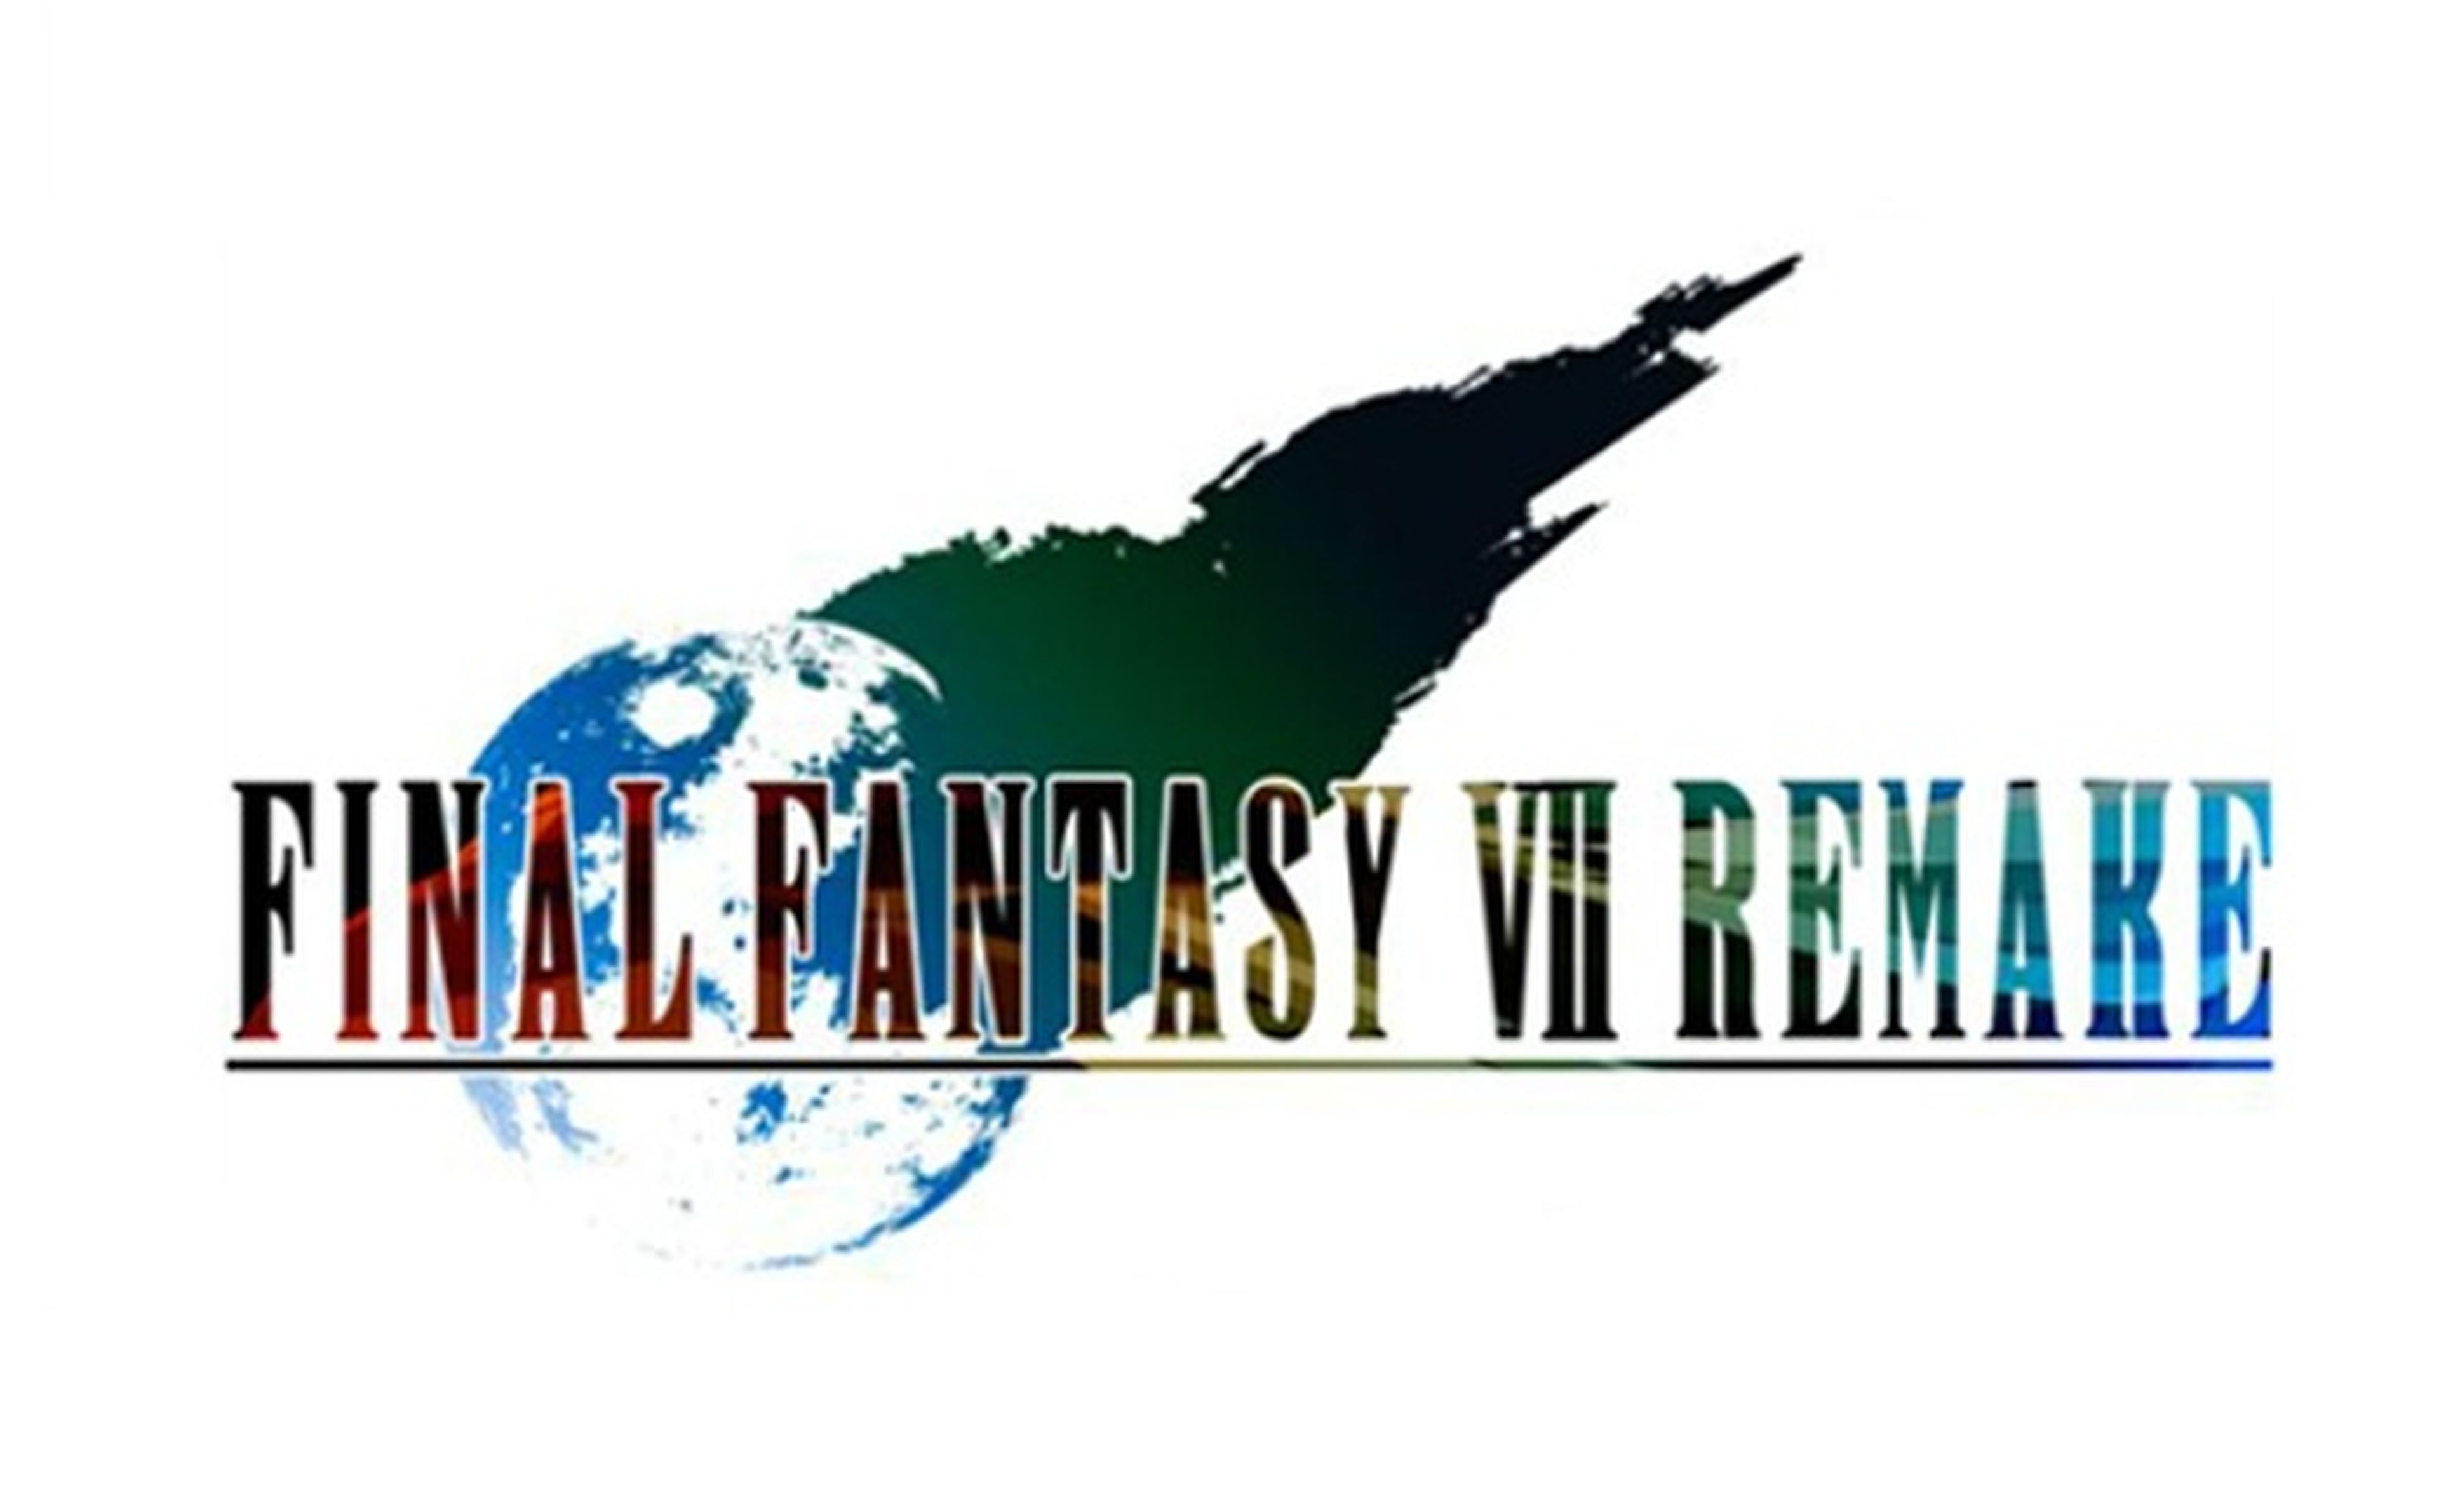 Otro Final Fantasy 7 más, hecho por fans